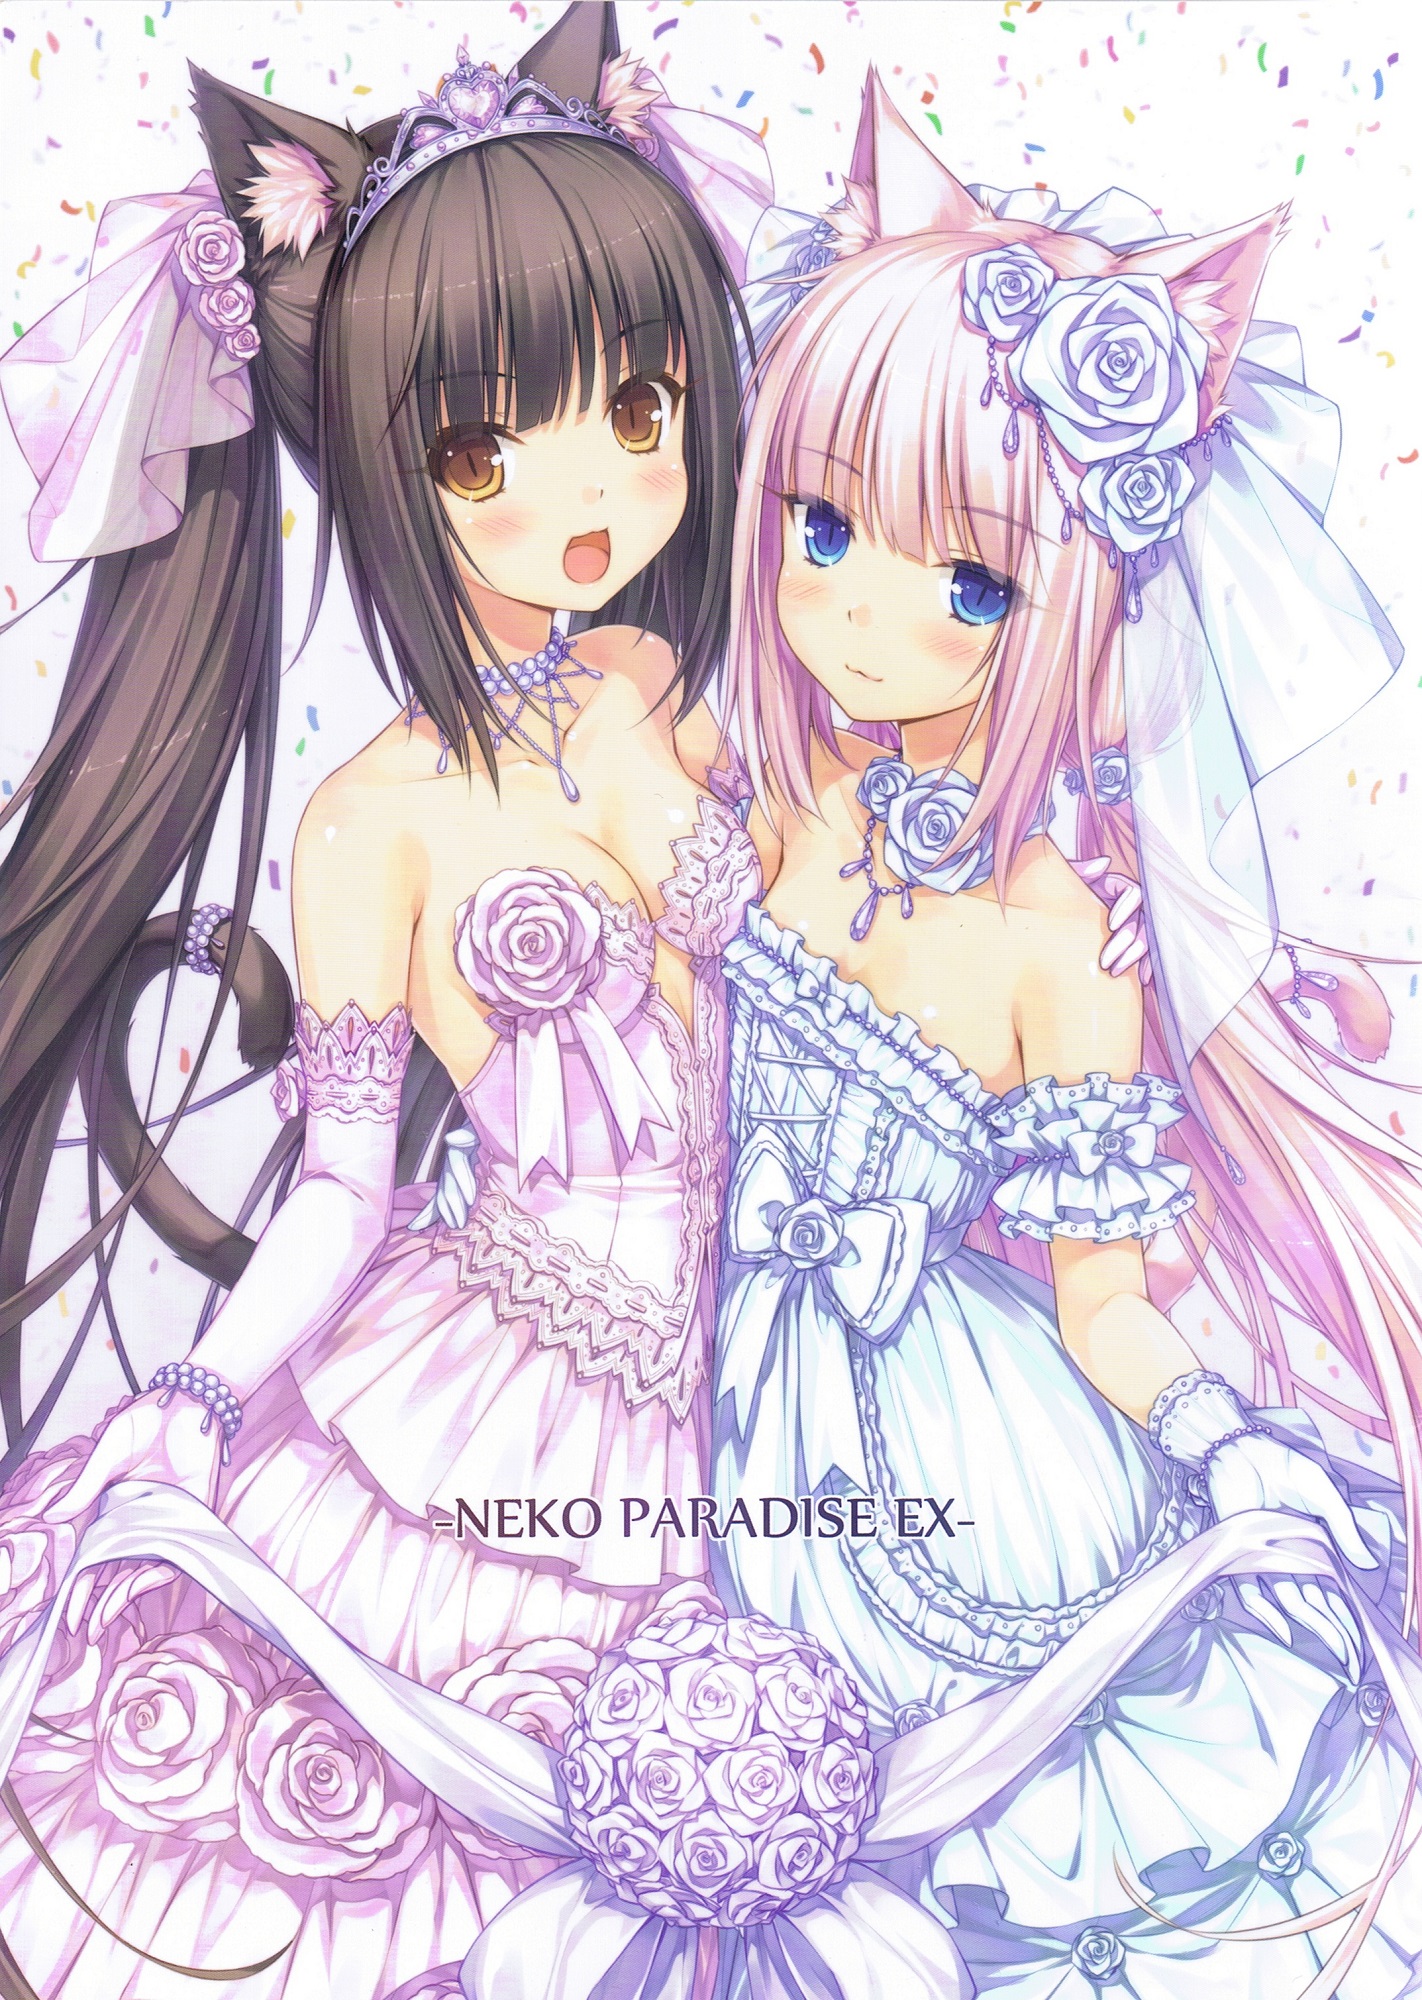 Фото Chocola и Vanilla в декольтированных свадебных платьях, манга Neko Paradise ex, art by Sayori